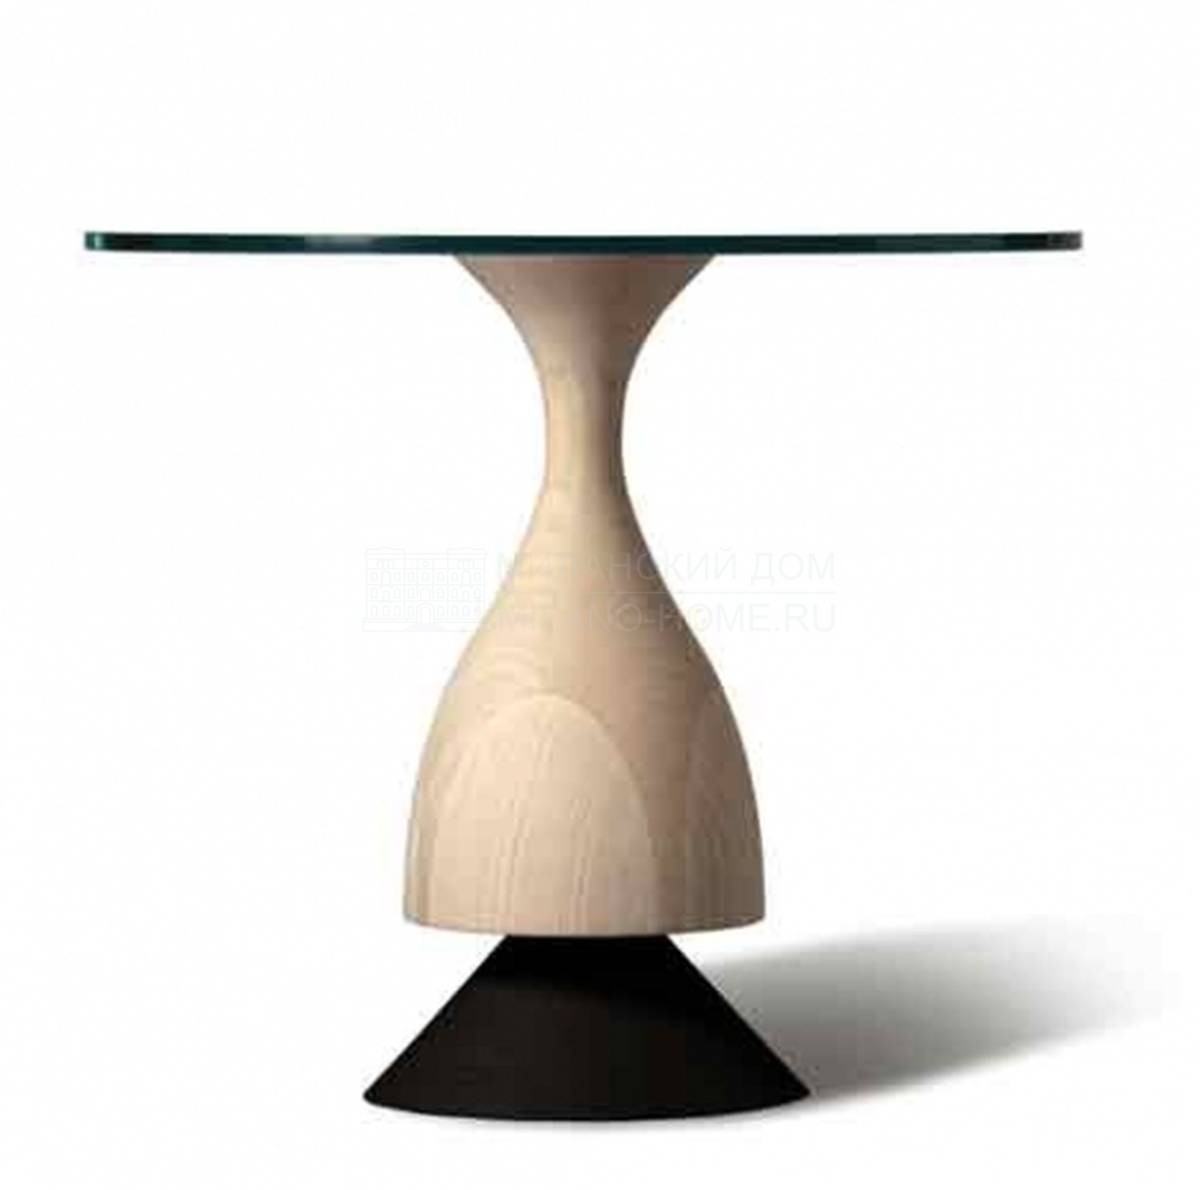 Кофейный столик Art.5608/F/Tavolino D'Artagnan из Италии фабрики MORELATO